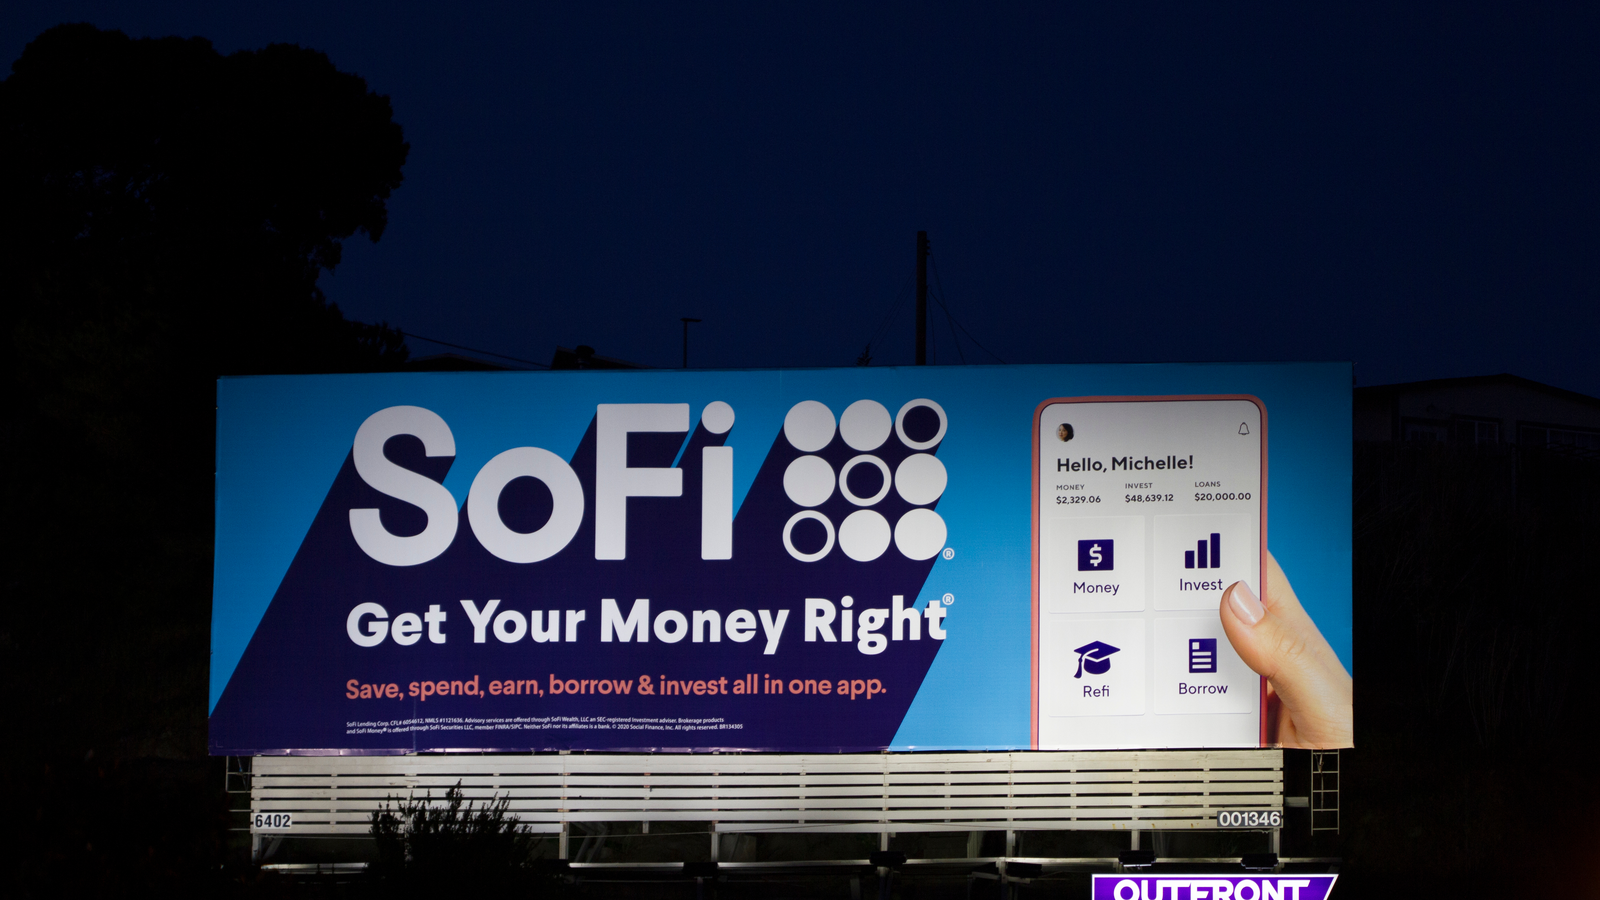 SoFi billboard seen at night.